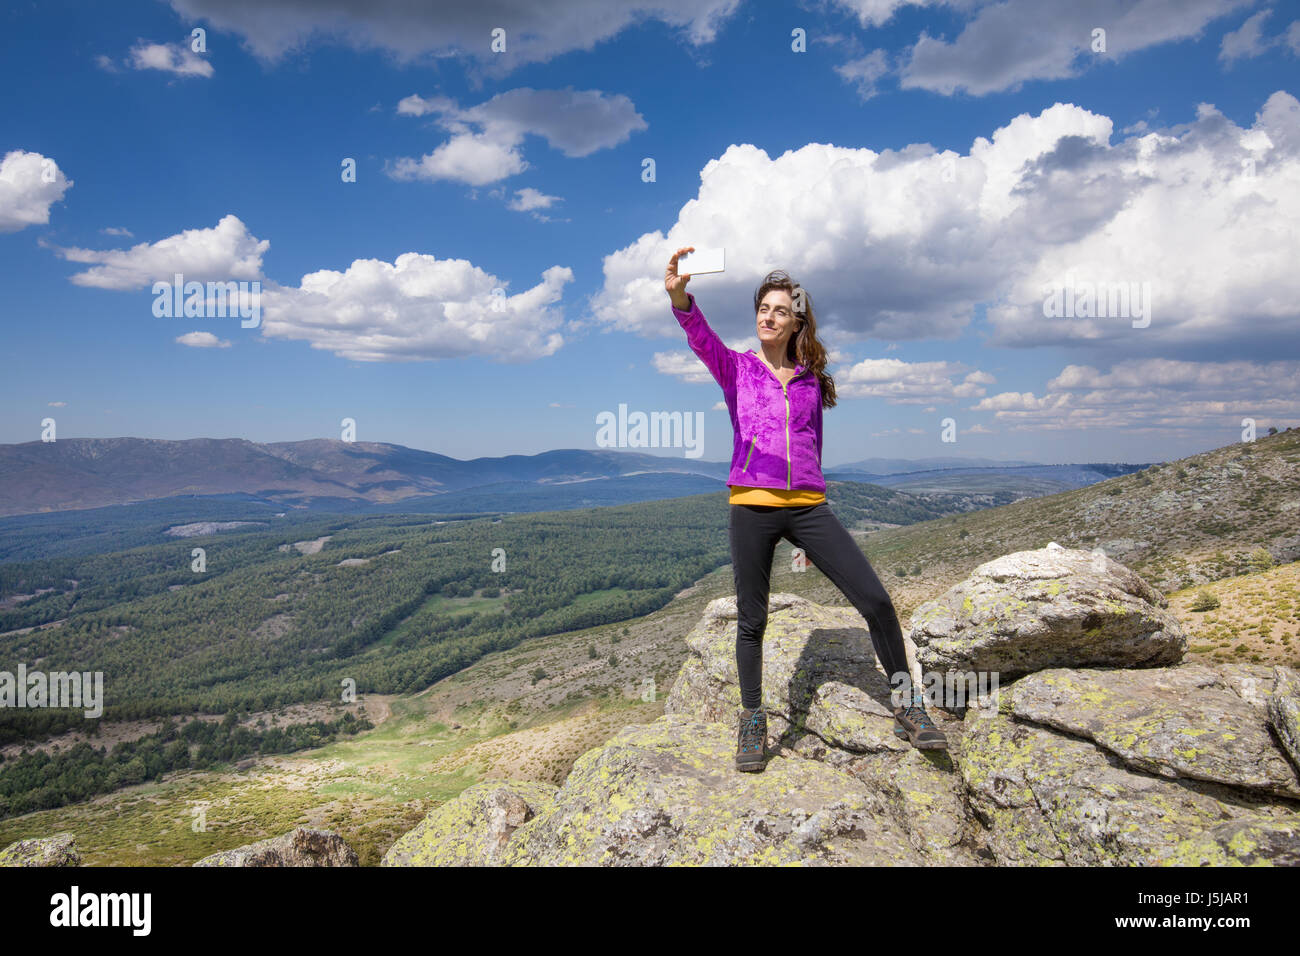 Deporte senderismo o trekking mujer con chaqueta de color púrpura, de pie  sobre la roca de pico, con teléfono inteligente móvil teniendo selfie foto  foto, detrás de un valle de Lozoya Fotografía